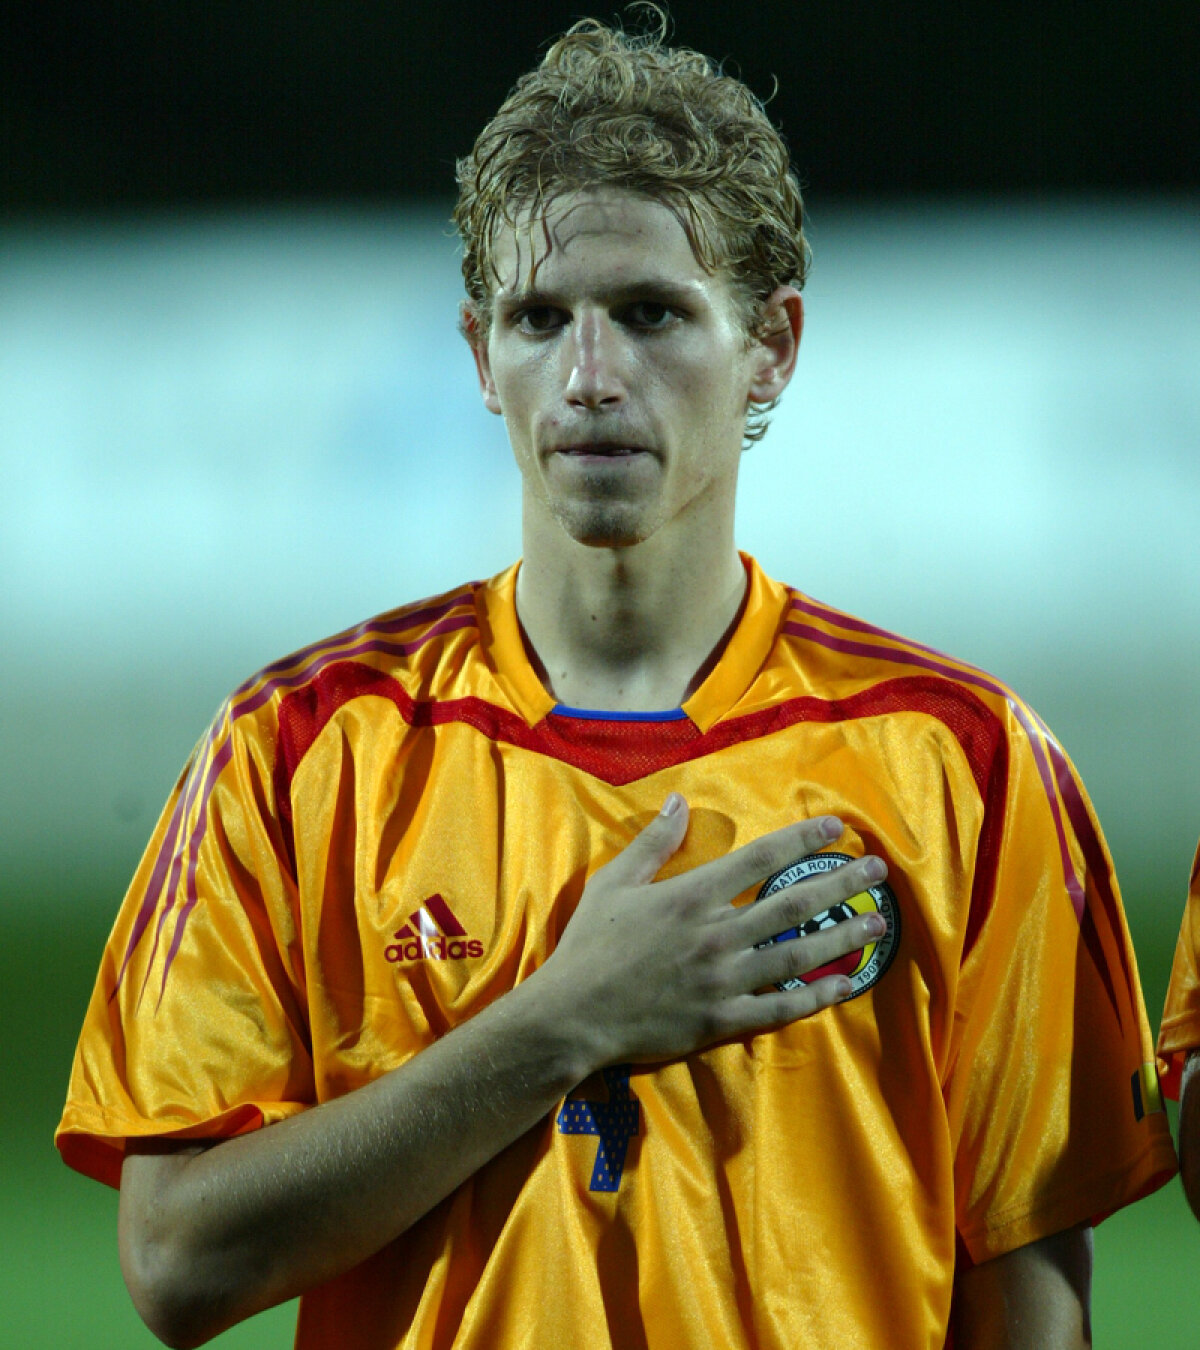 FOTO Mihai Neşu şi-a încheiat contractul cu Utrecht şi, o dată cu el, cariera de sportiv: "Ultima mea zi ca fotbalist"